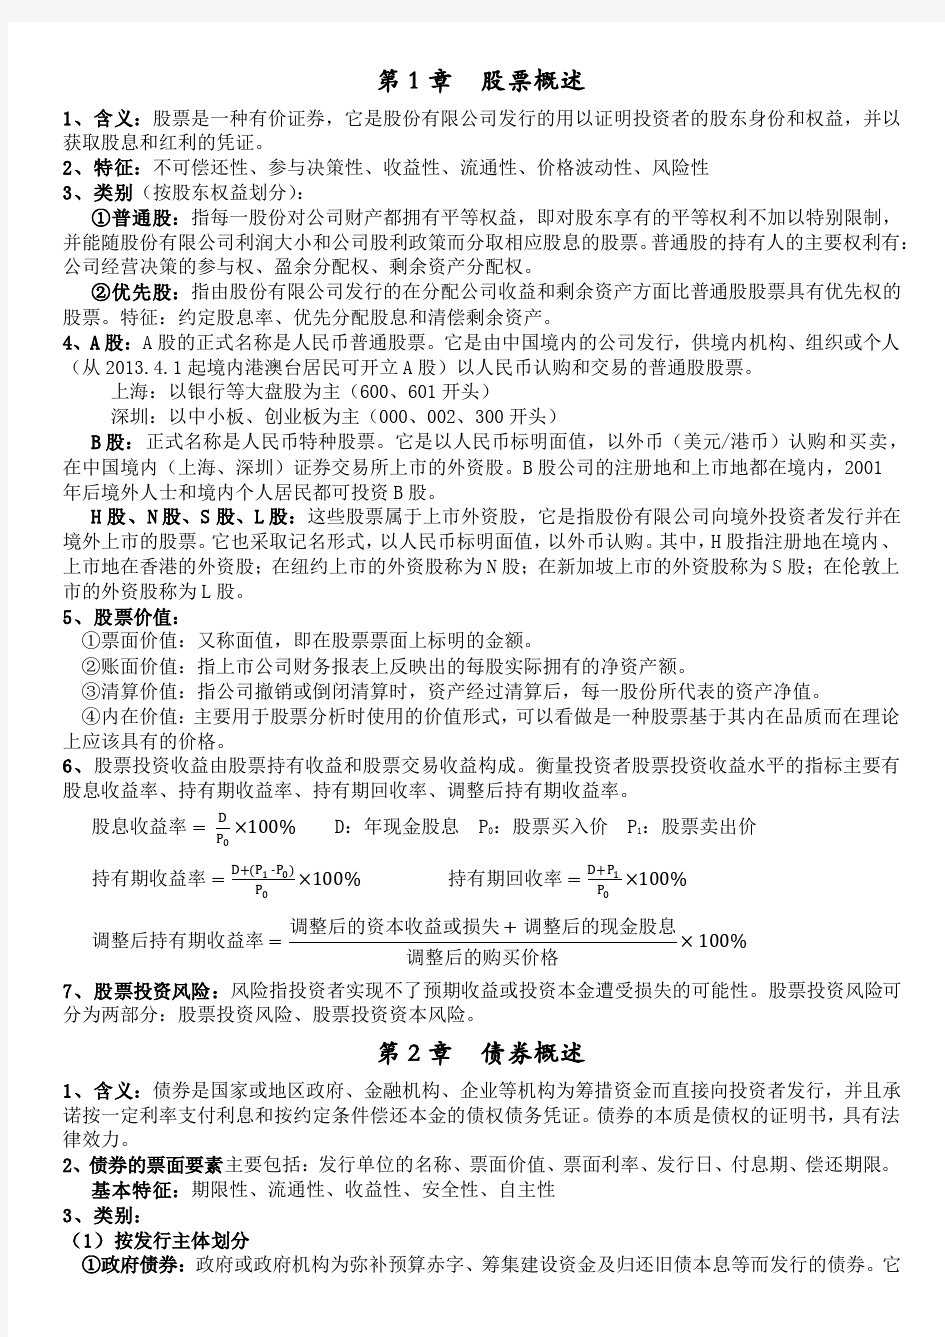 湘潭大学证券投资学期末考试资料(自己整理)